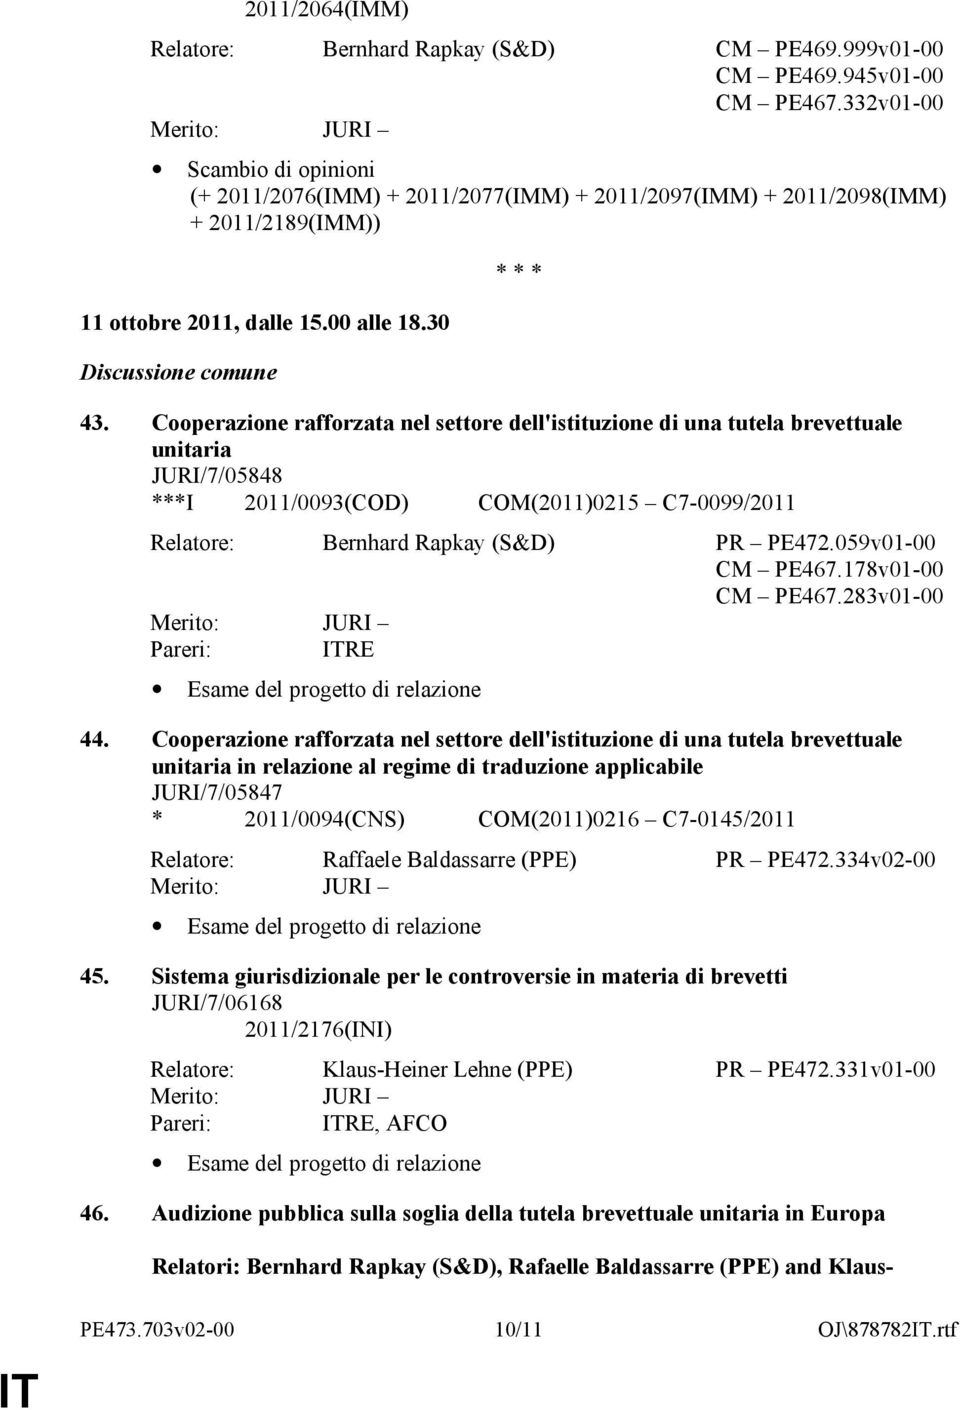 Cooperazione rafforzata nel settore dell'istituzione di una tutela brevettuale unitaria JURI/7/05848 ***I 2011/0093(COD) COM(2011)0215 C7-0099/2011 Relatore: Bernhard Rapkay (S&D) PR PE472.